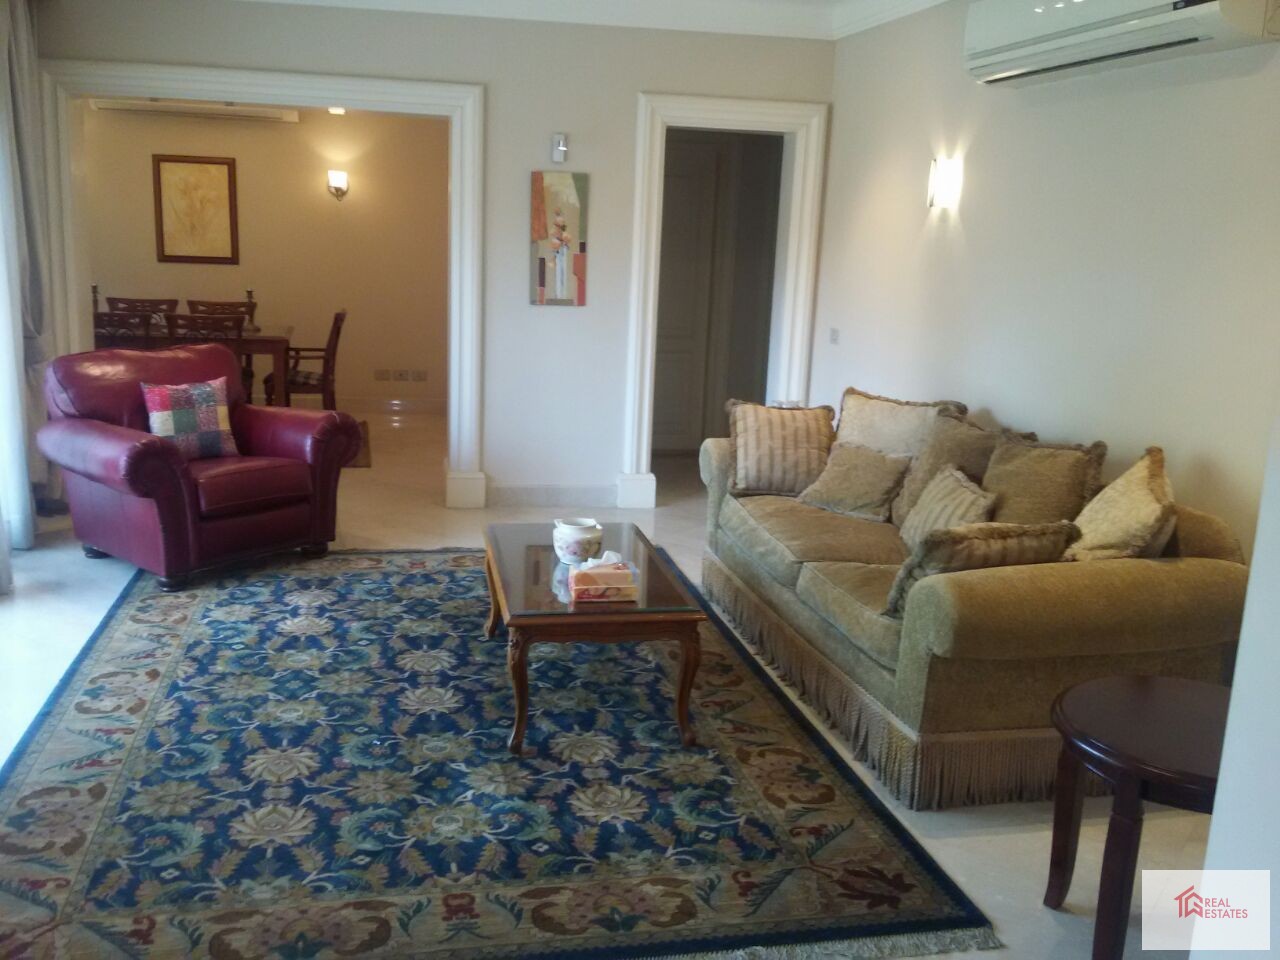 Möblierte Wohnung zu vermieten, möbliert in Maadi, 3 Schlafzimmer, 2 Bäder